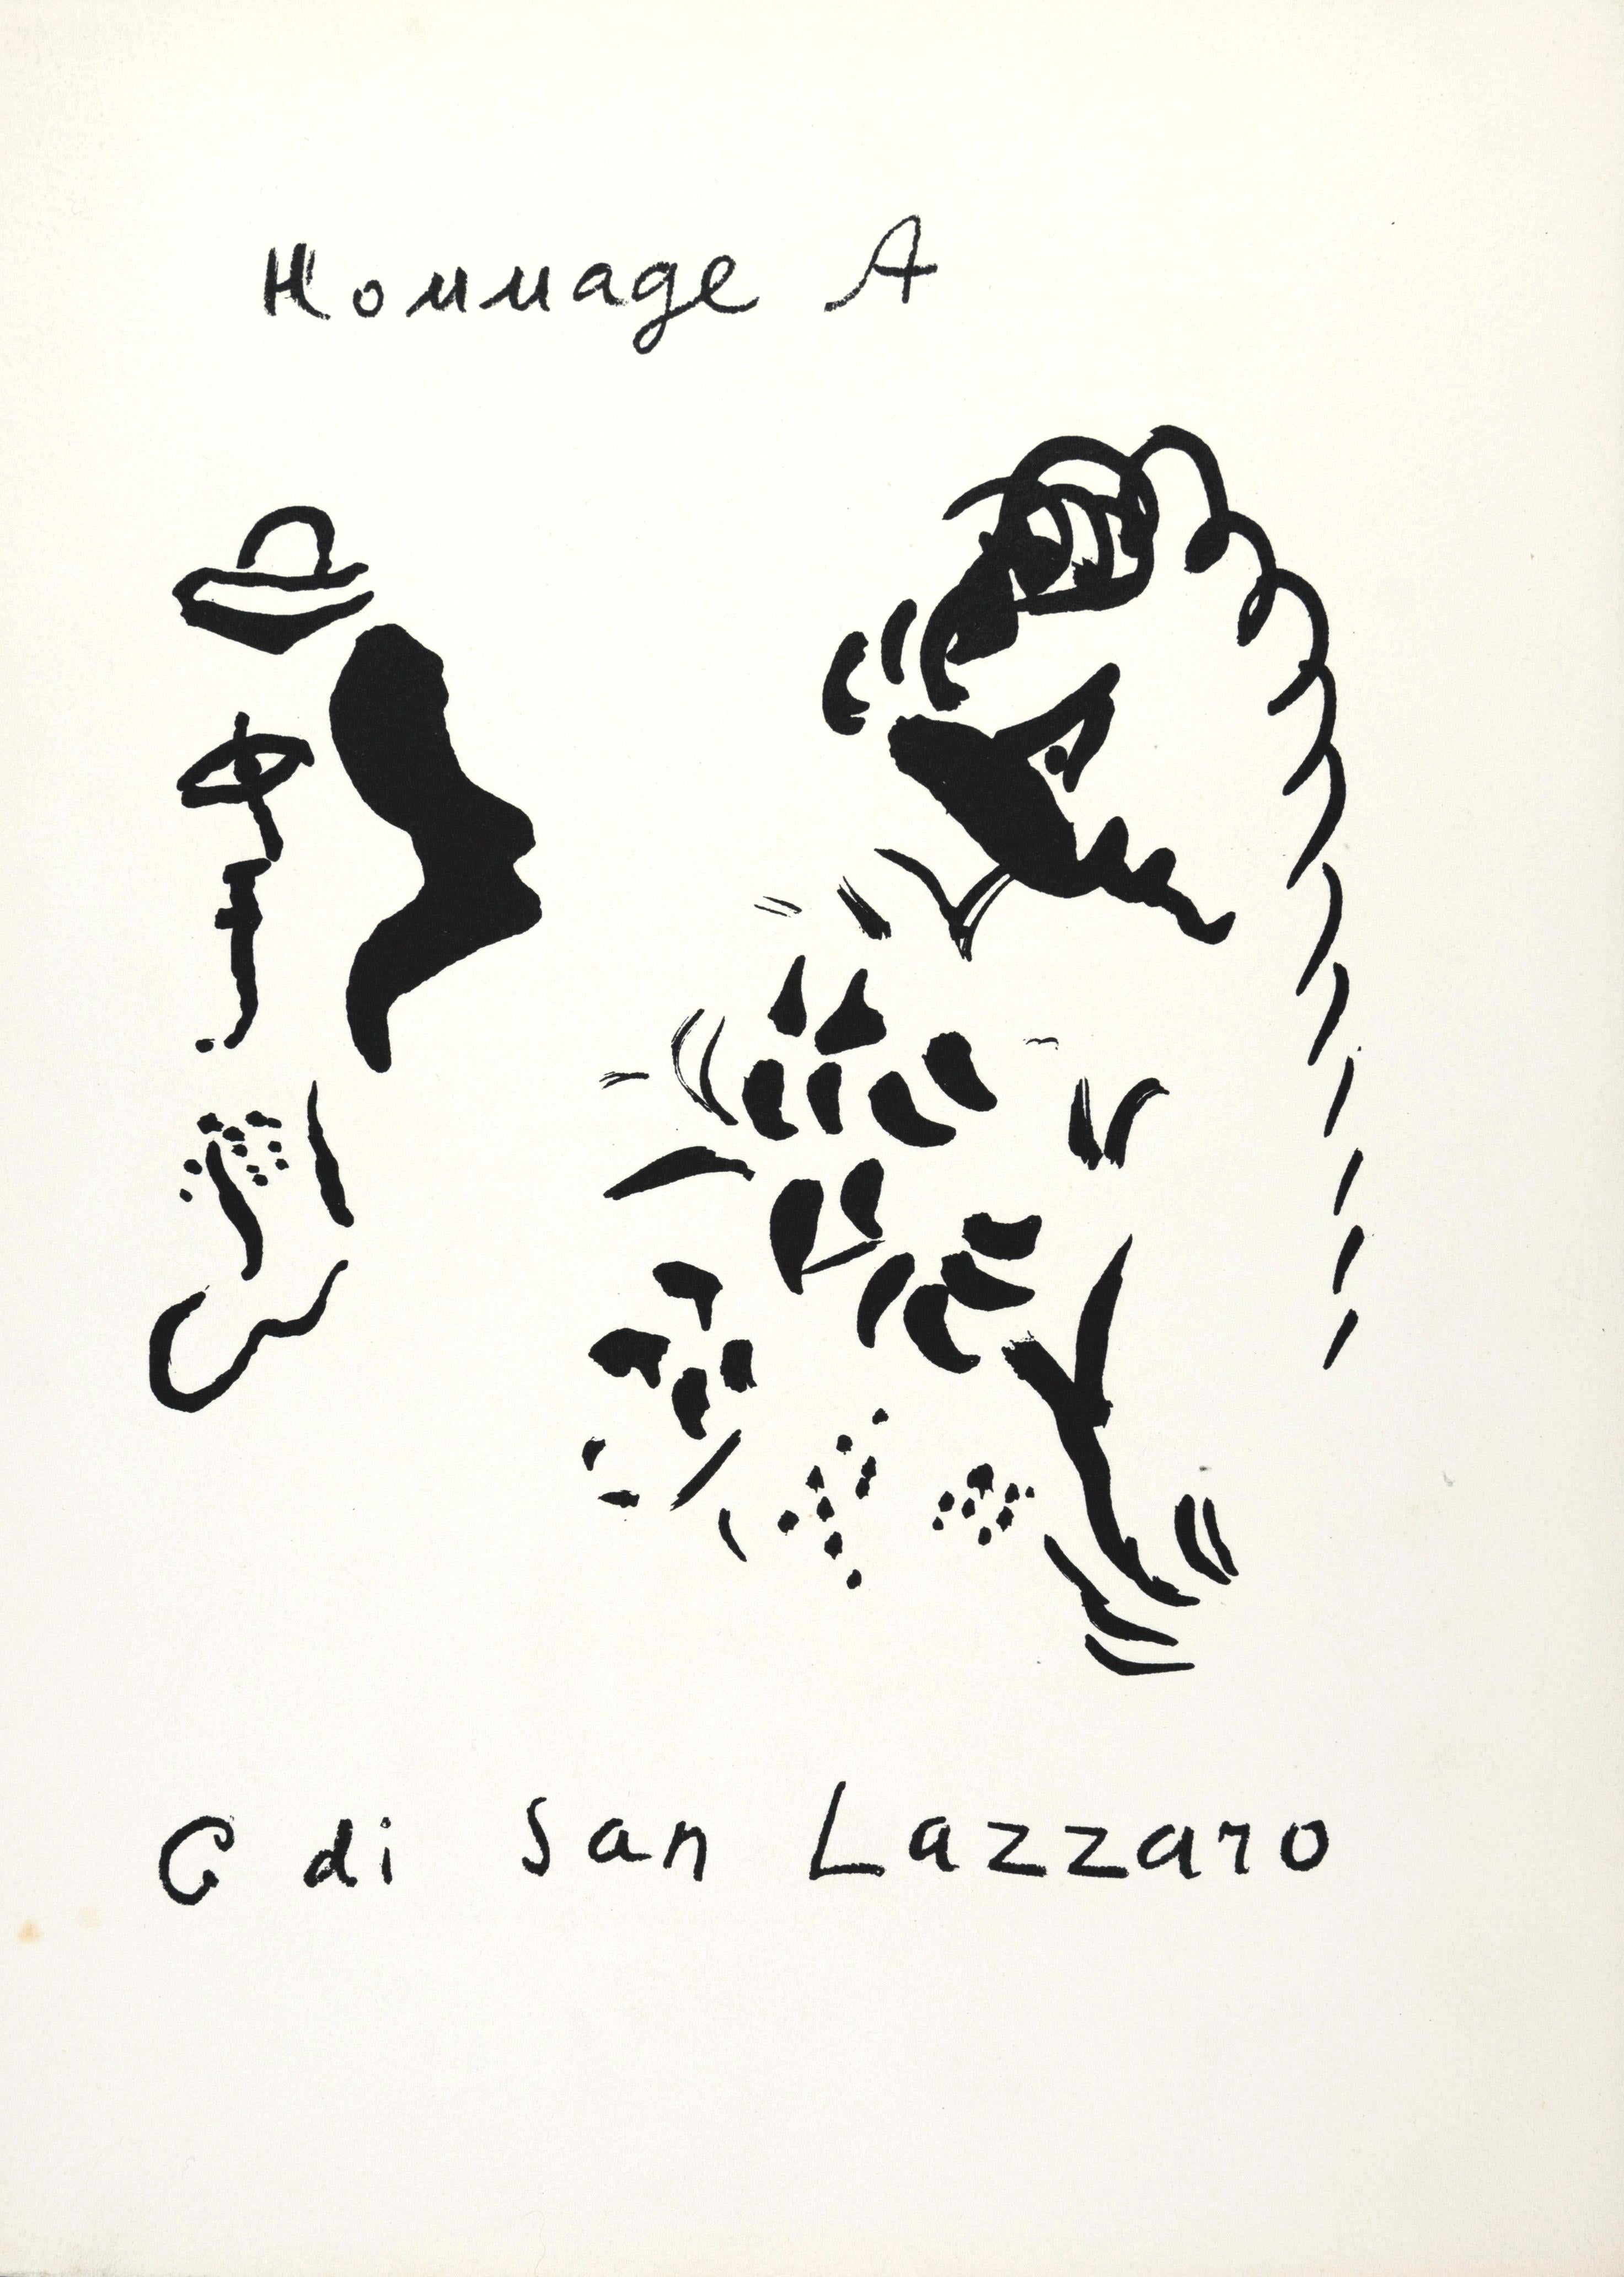 Hommage à San Lazzaro ist eine Lithographie nach Marc Chagall zu Ehren von Gualtieri di San Lazzaro, Direktor der Kunstzeitschrift "Xème Siècle".

Dieser Druck (nicht signiert und nicht nummeriert) stammt aus der Mappe "Hommage à San Lazzaro", die